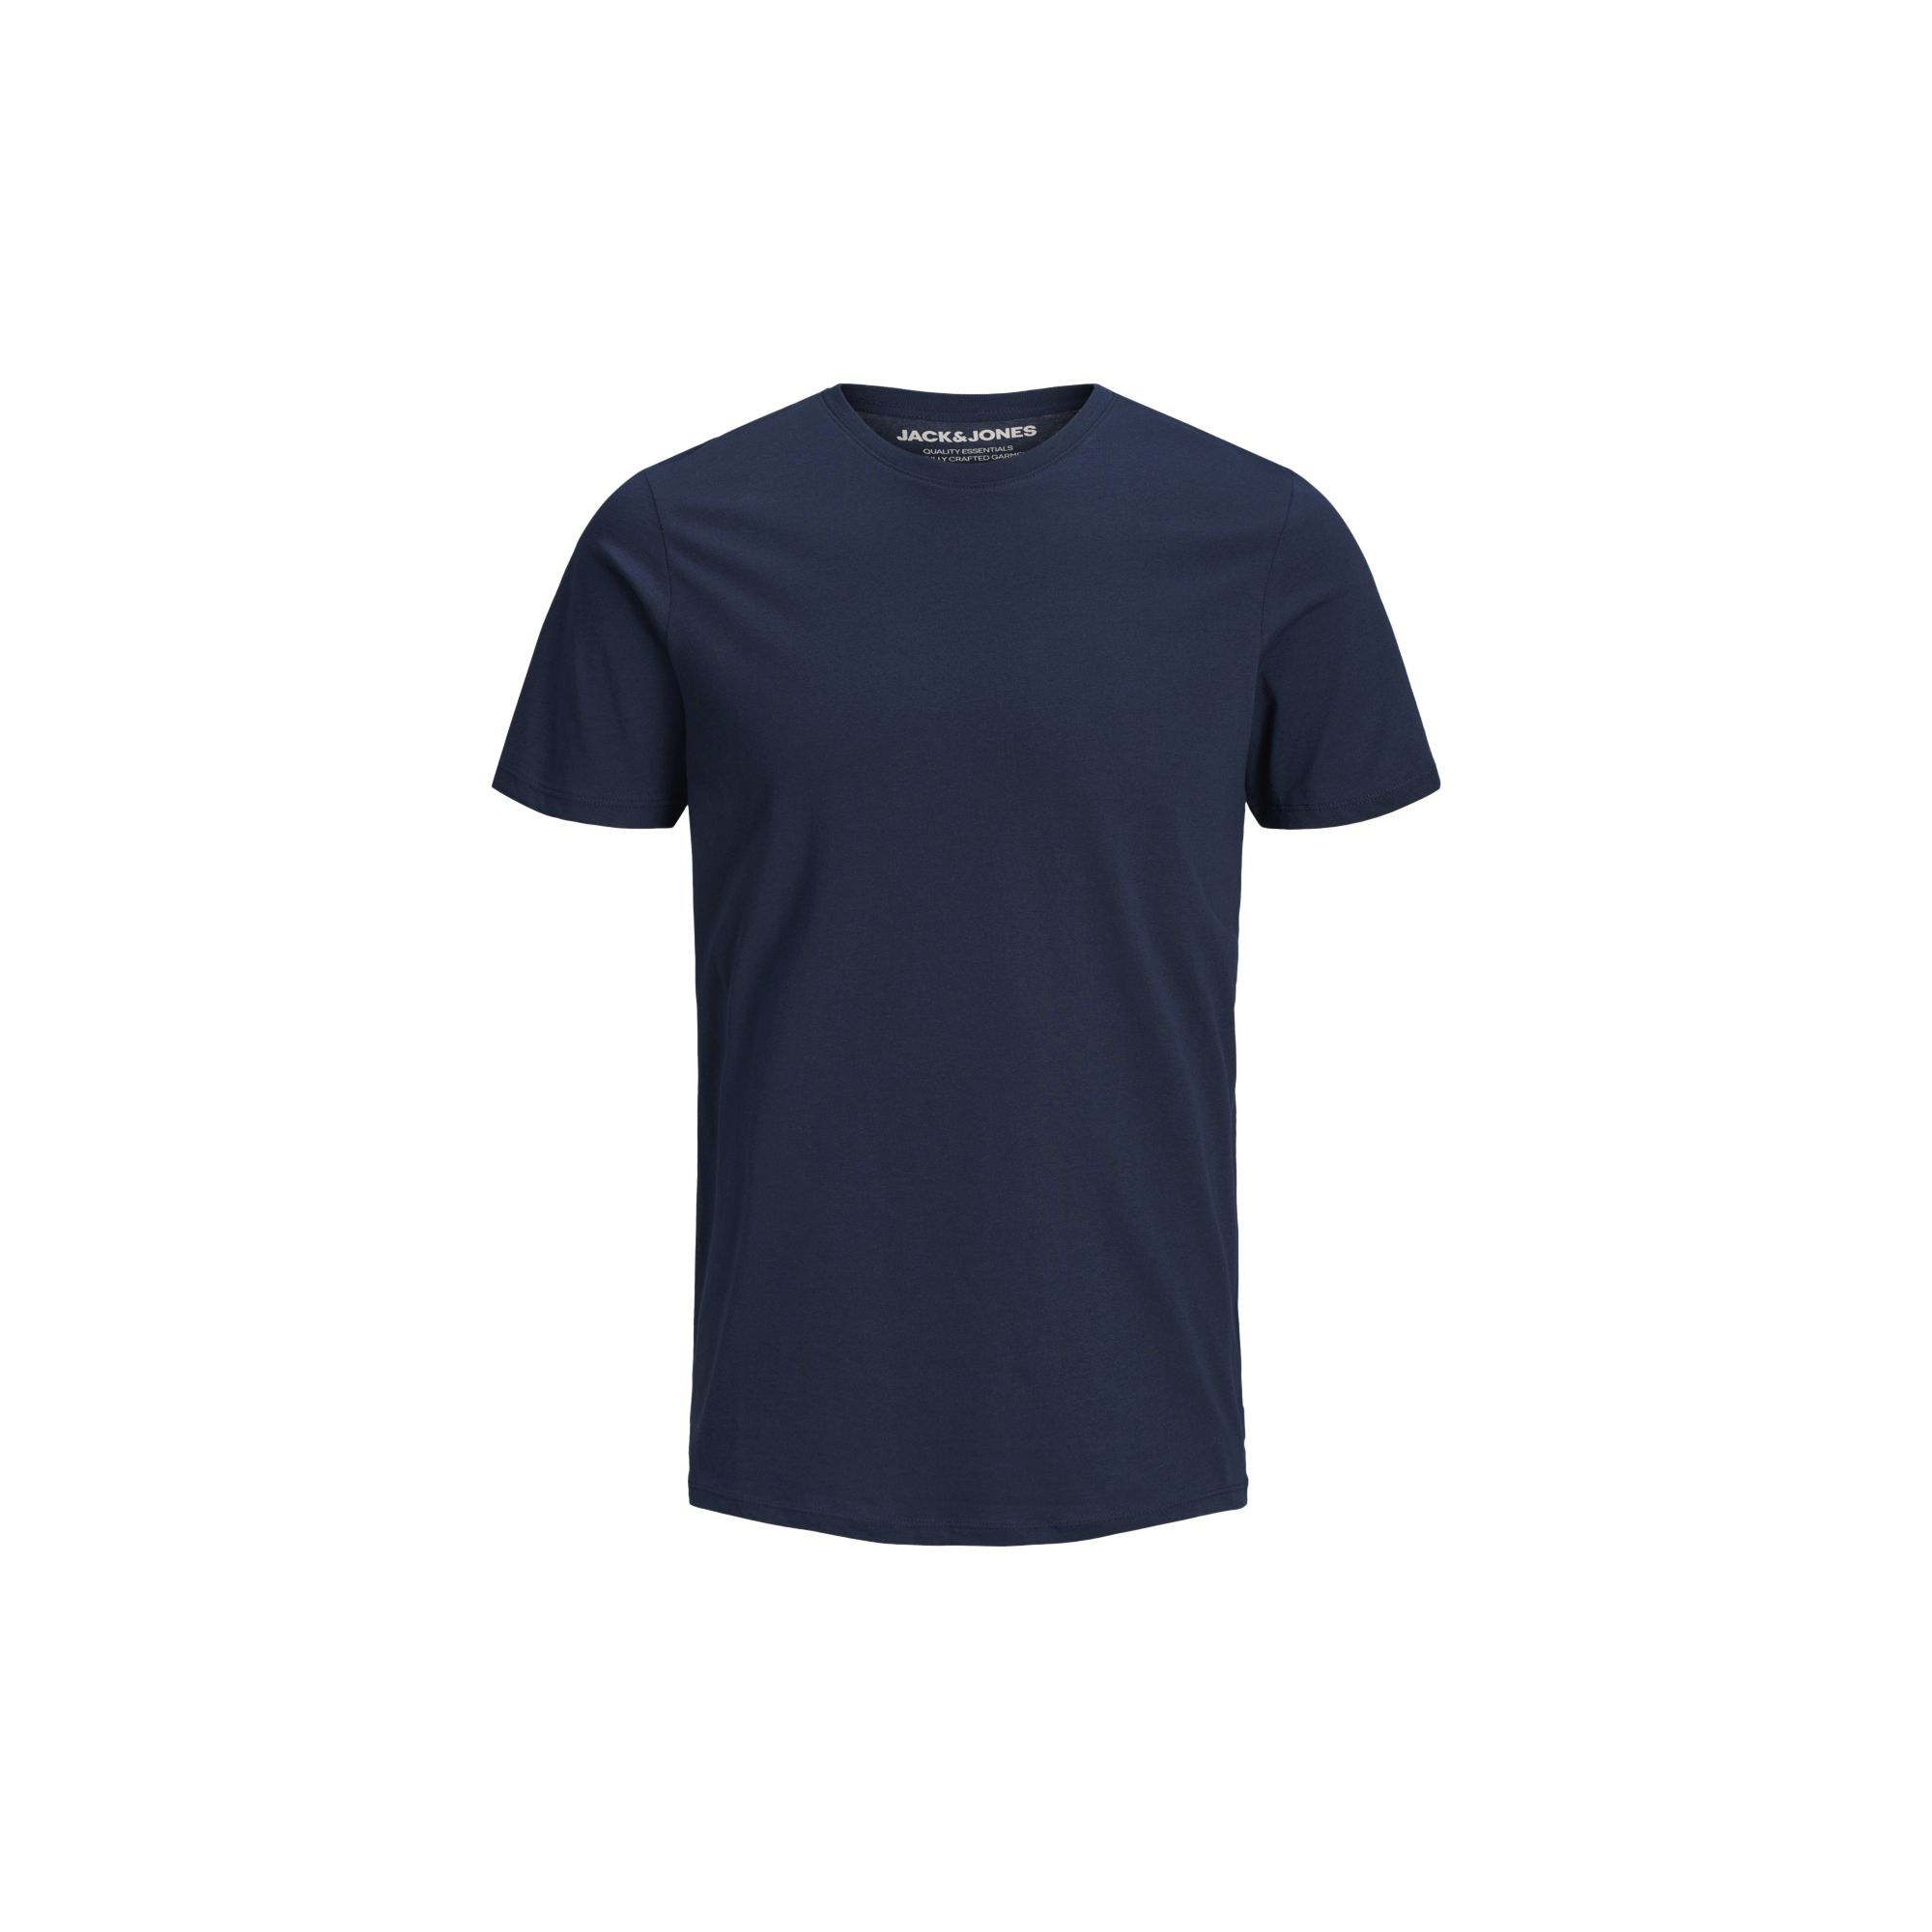 Organic bluze Bluze & Tricouri